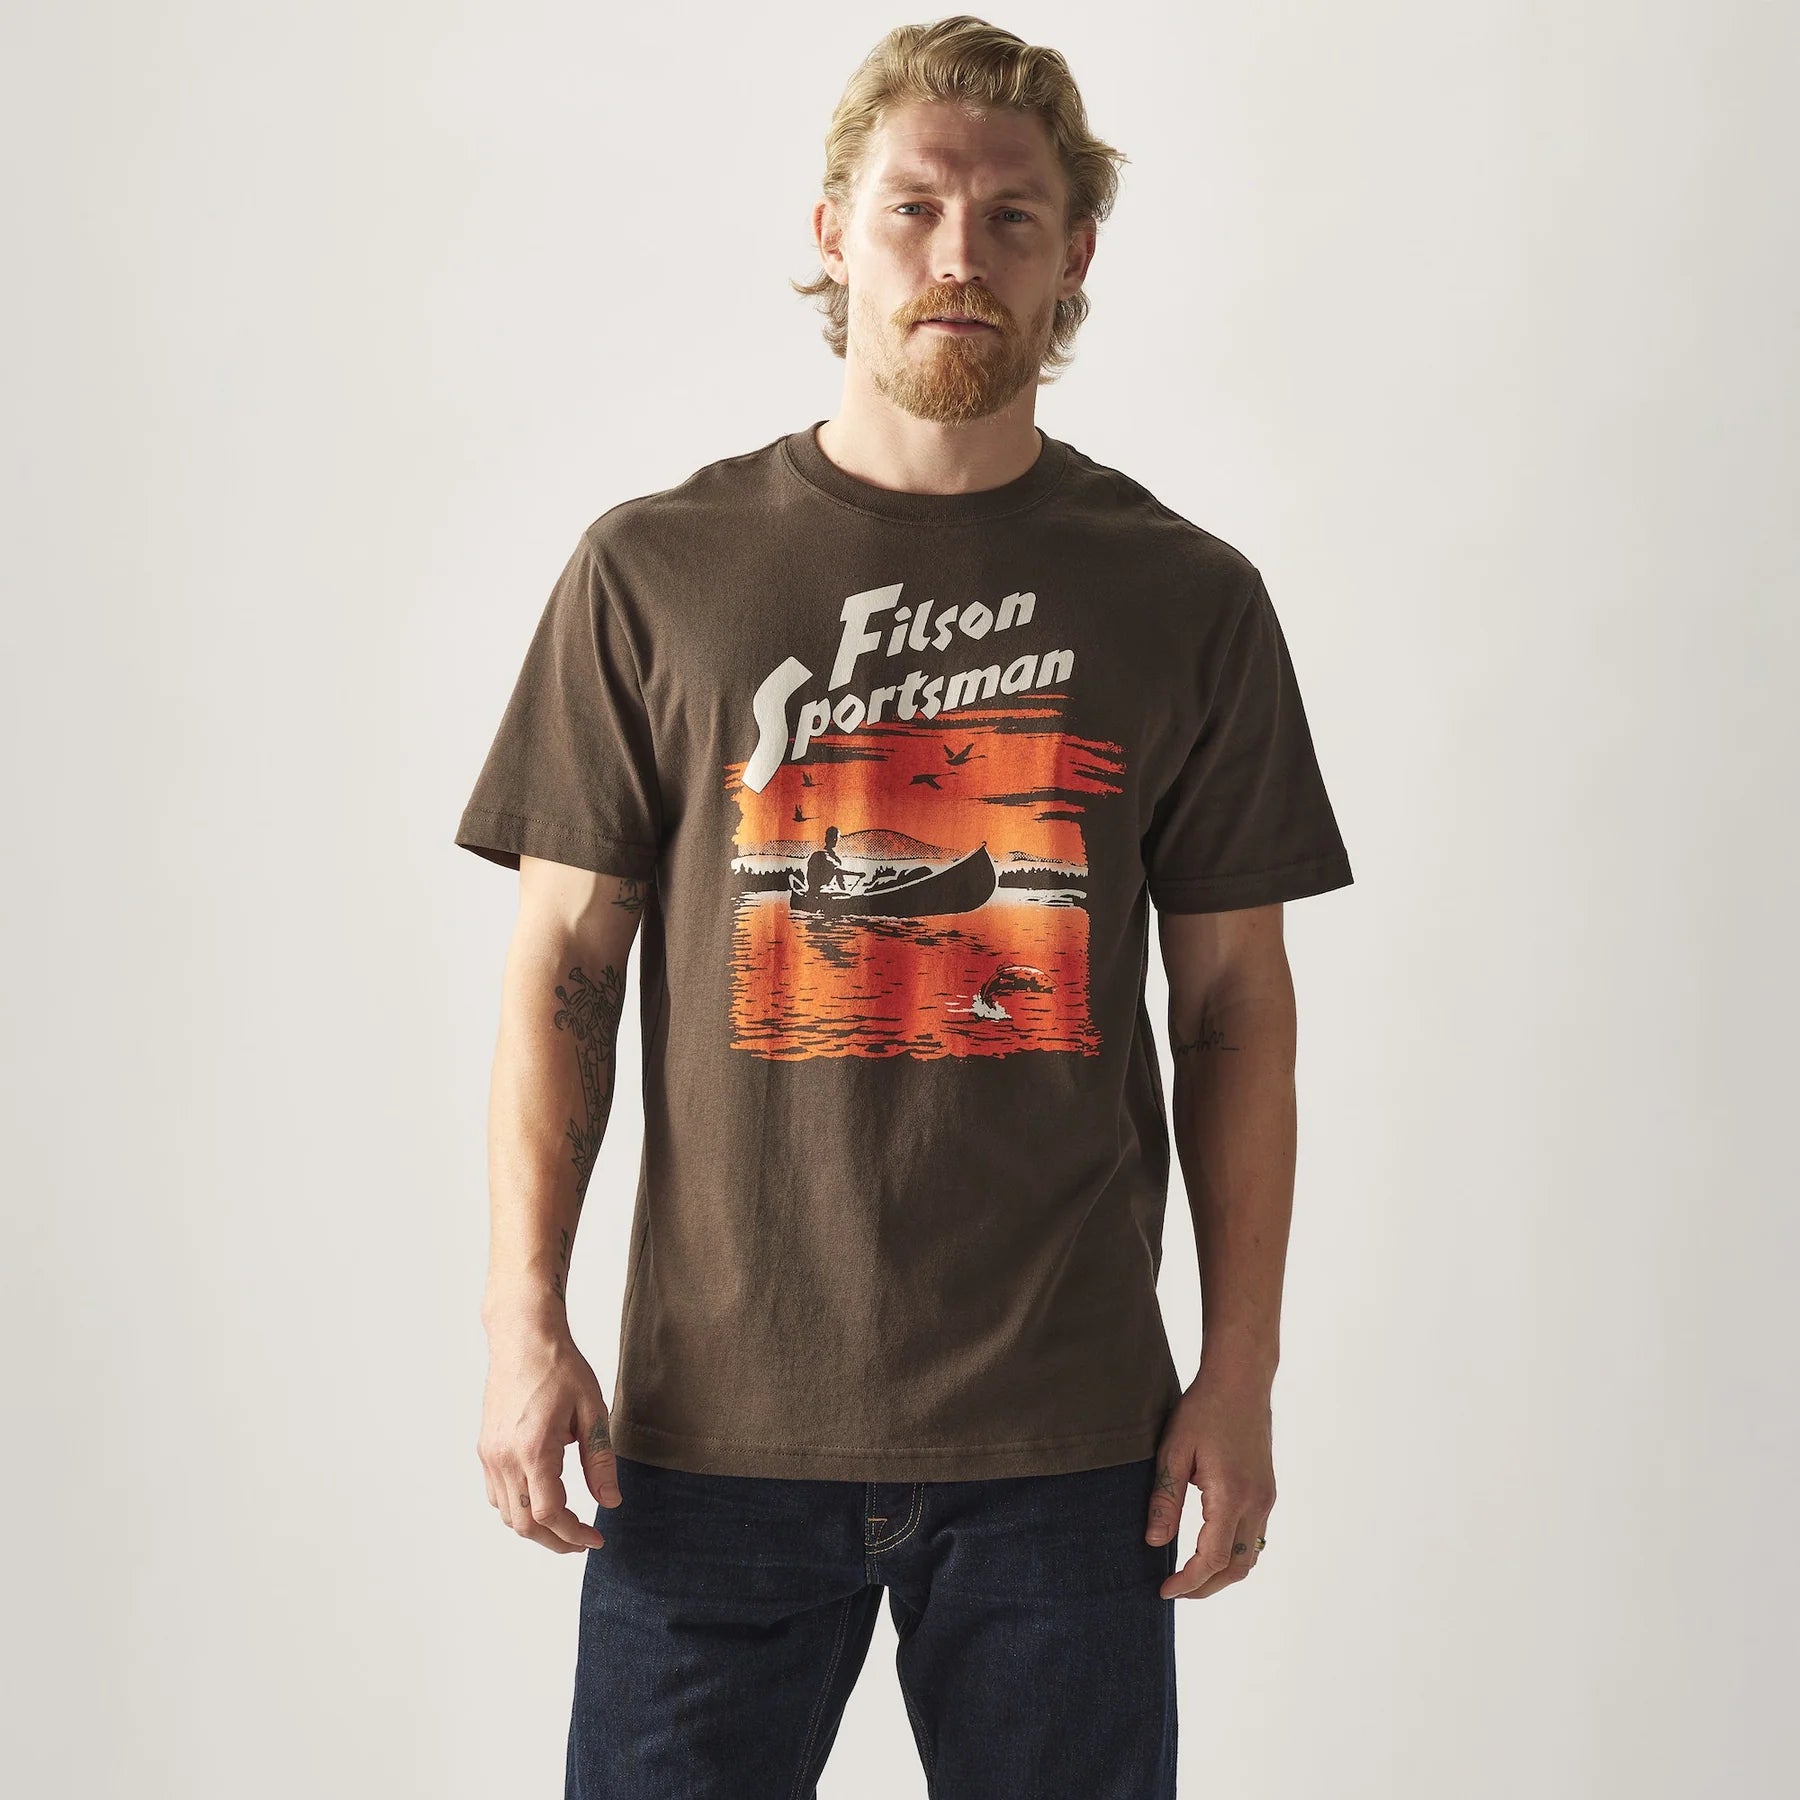 フィルソン/FILSON - パイオニアグラフィック Tシャツ/PIONEER GRAPHIC ...